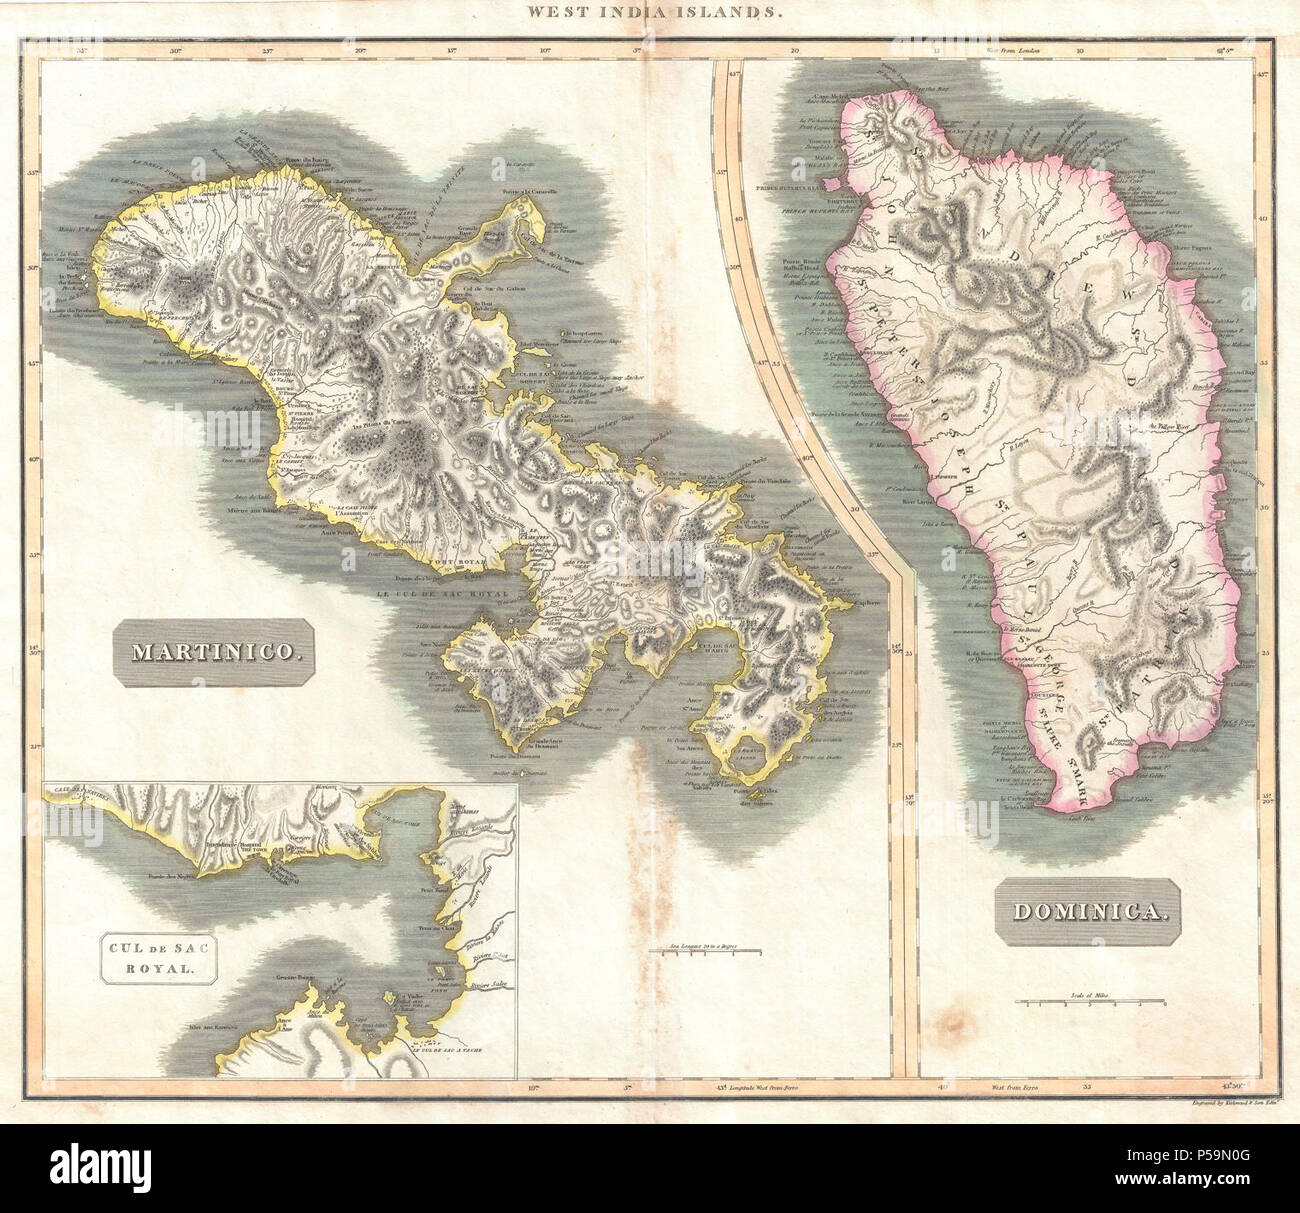 Thomson 1814 Plan de la Martinique et la Dominique ( Antilles ) - Geographicus - MartiniqueDominica-thomson-1814. Banque D'Images